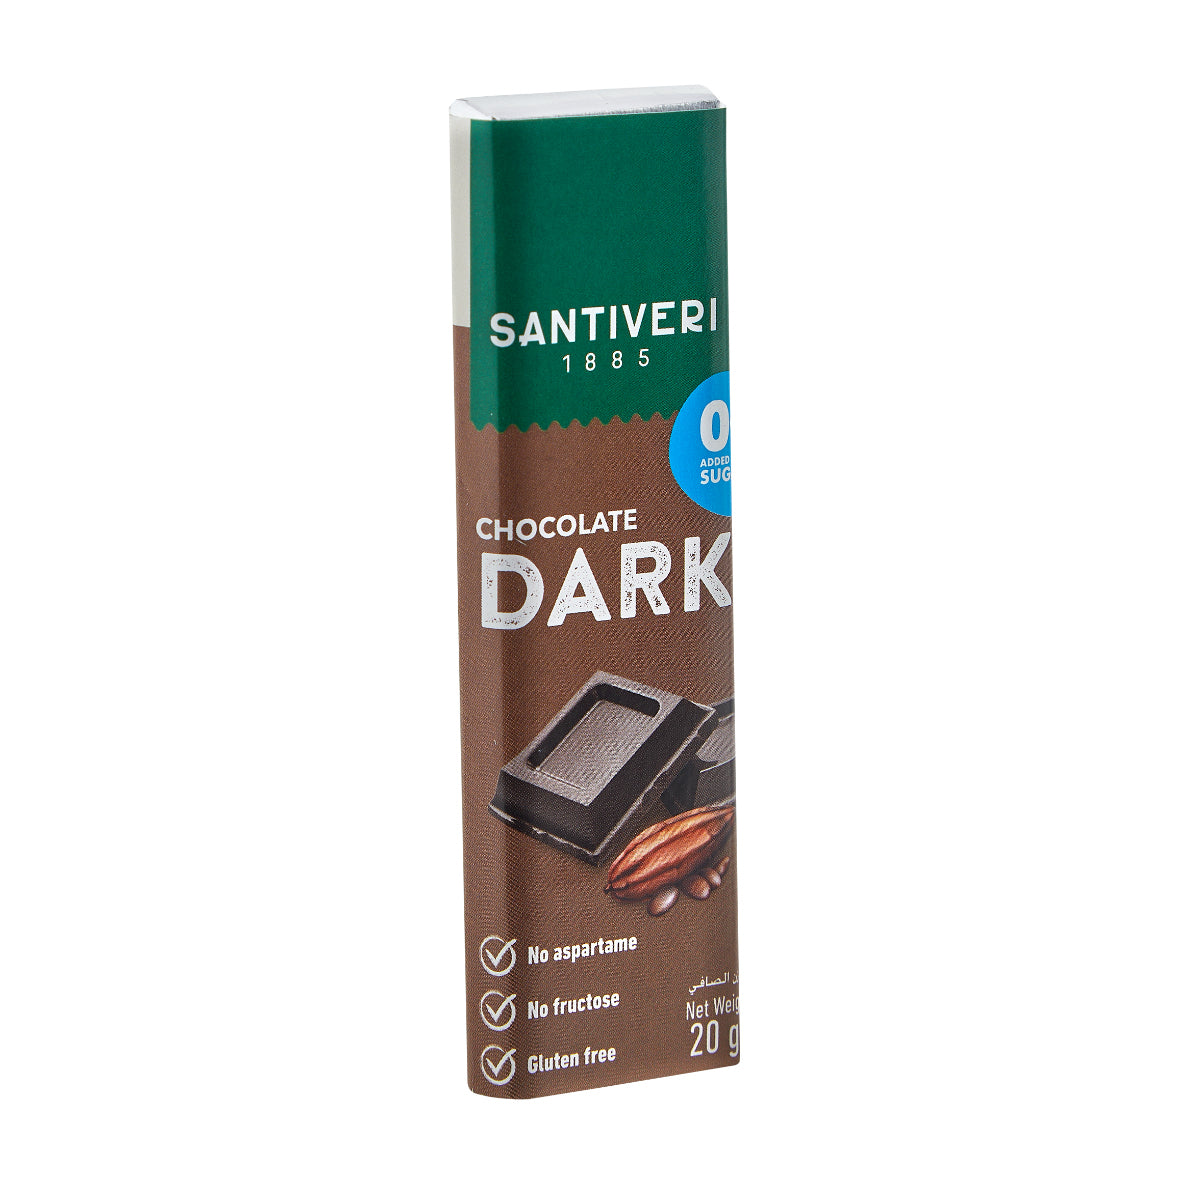 Santiveri Sugar Free Dark Chocolate 1 Box (24x20g)